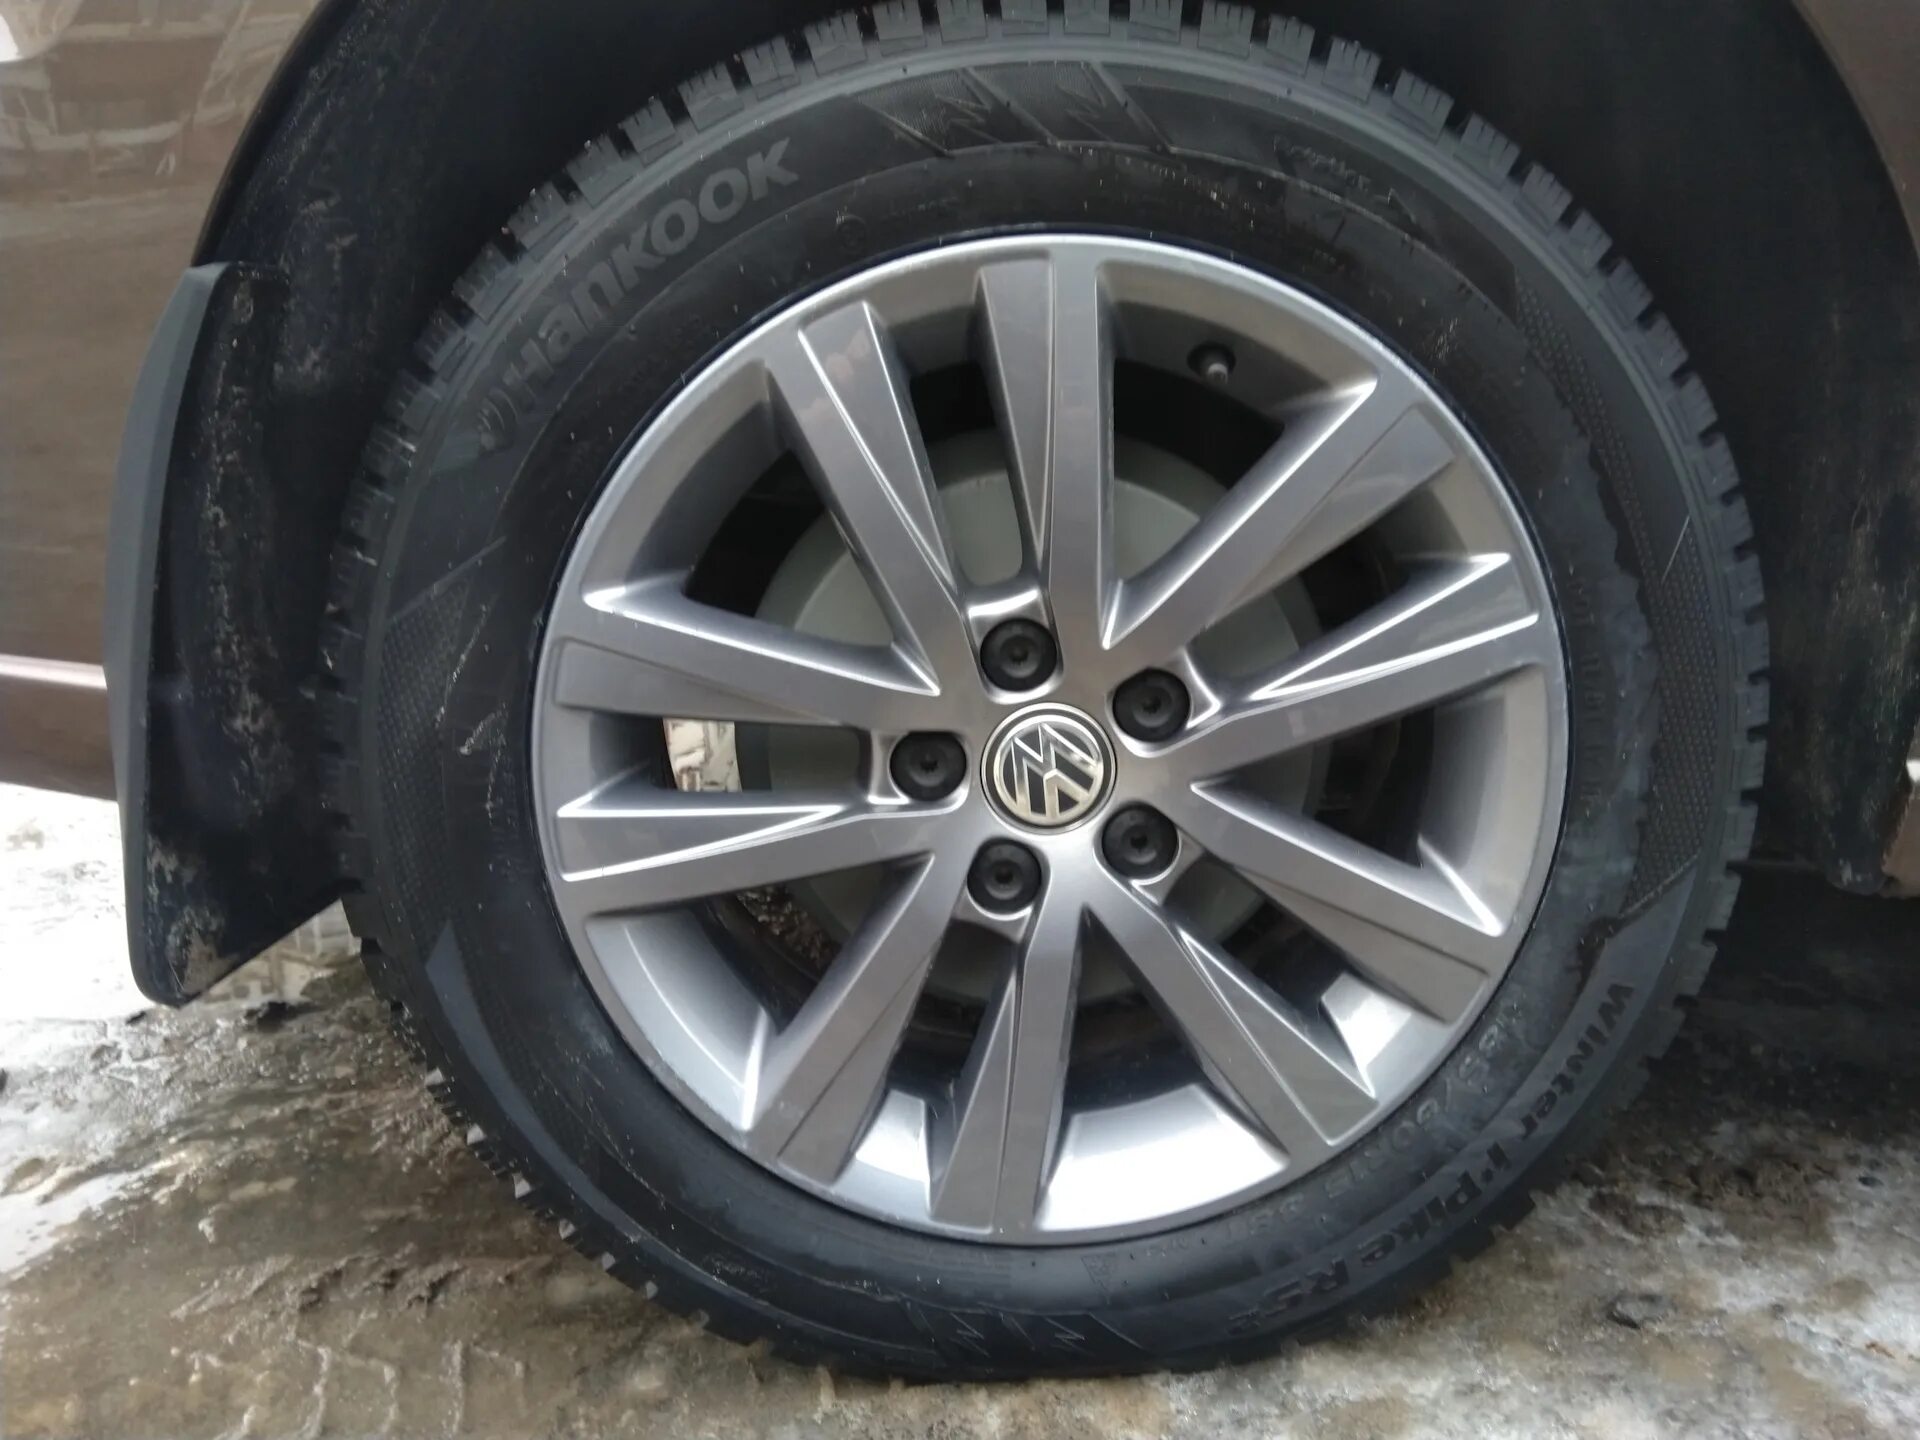 Зимняя резина Volkswagen Polo. Штатная резина поло седан. Размер дисков и шин Фольксваген поло седан 2019 год. Какая резина стоит на Фольксваген поло. Размер резины поло седан